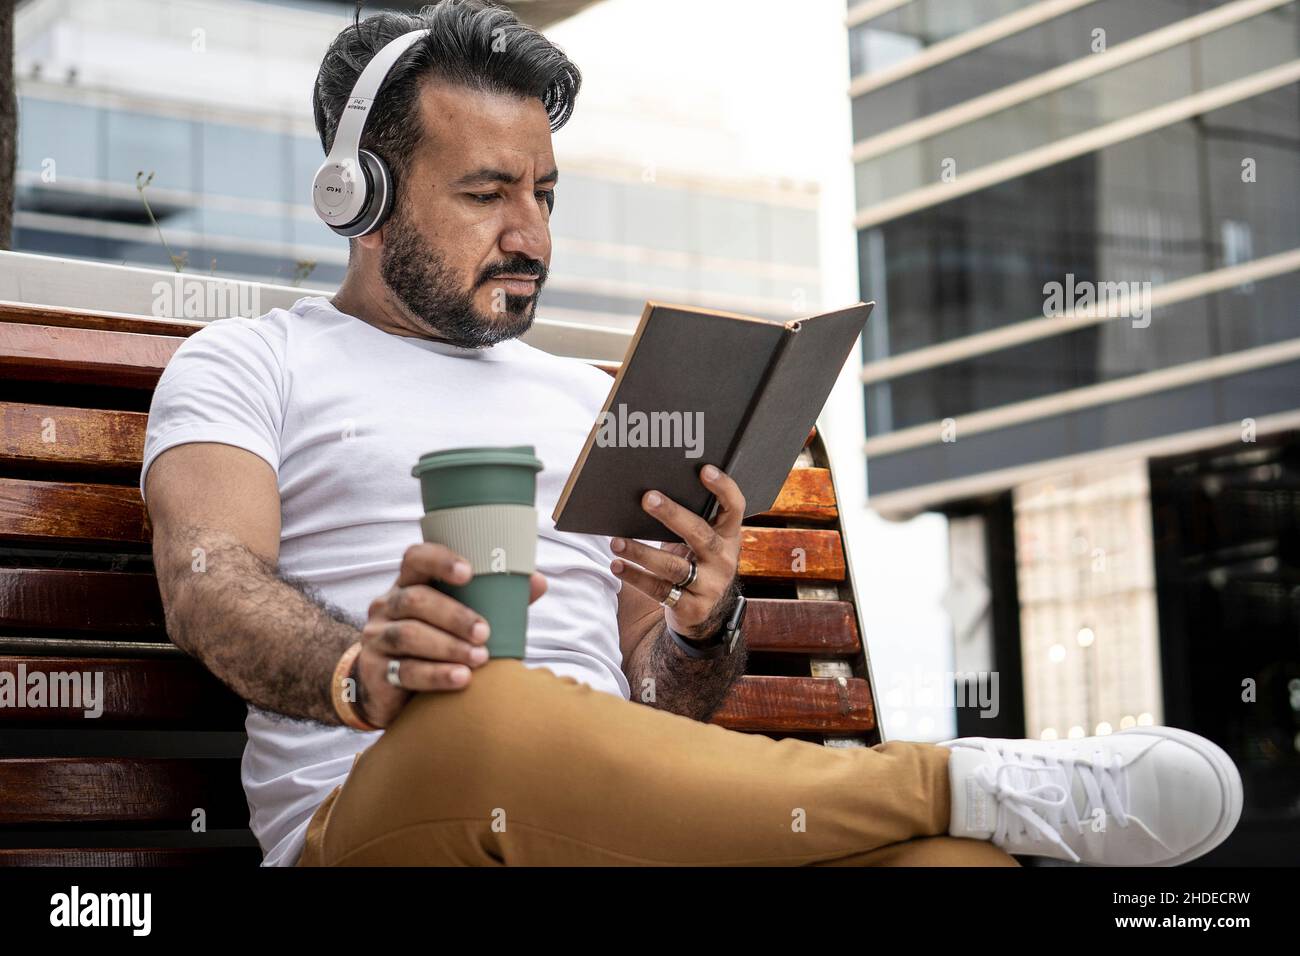 lateinischer Mann mit Bart sitzt auf einer Bank und liest ein Buch mit einer Tasse Kaffee in einer städtischen Umgebung. Stockfoto